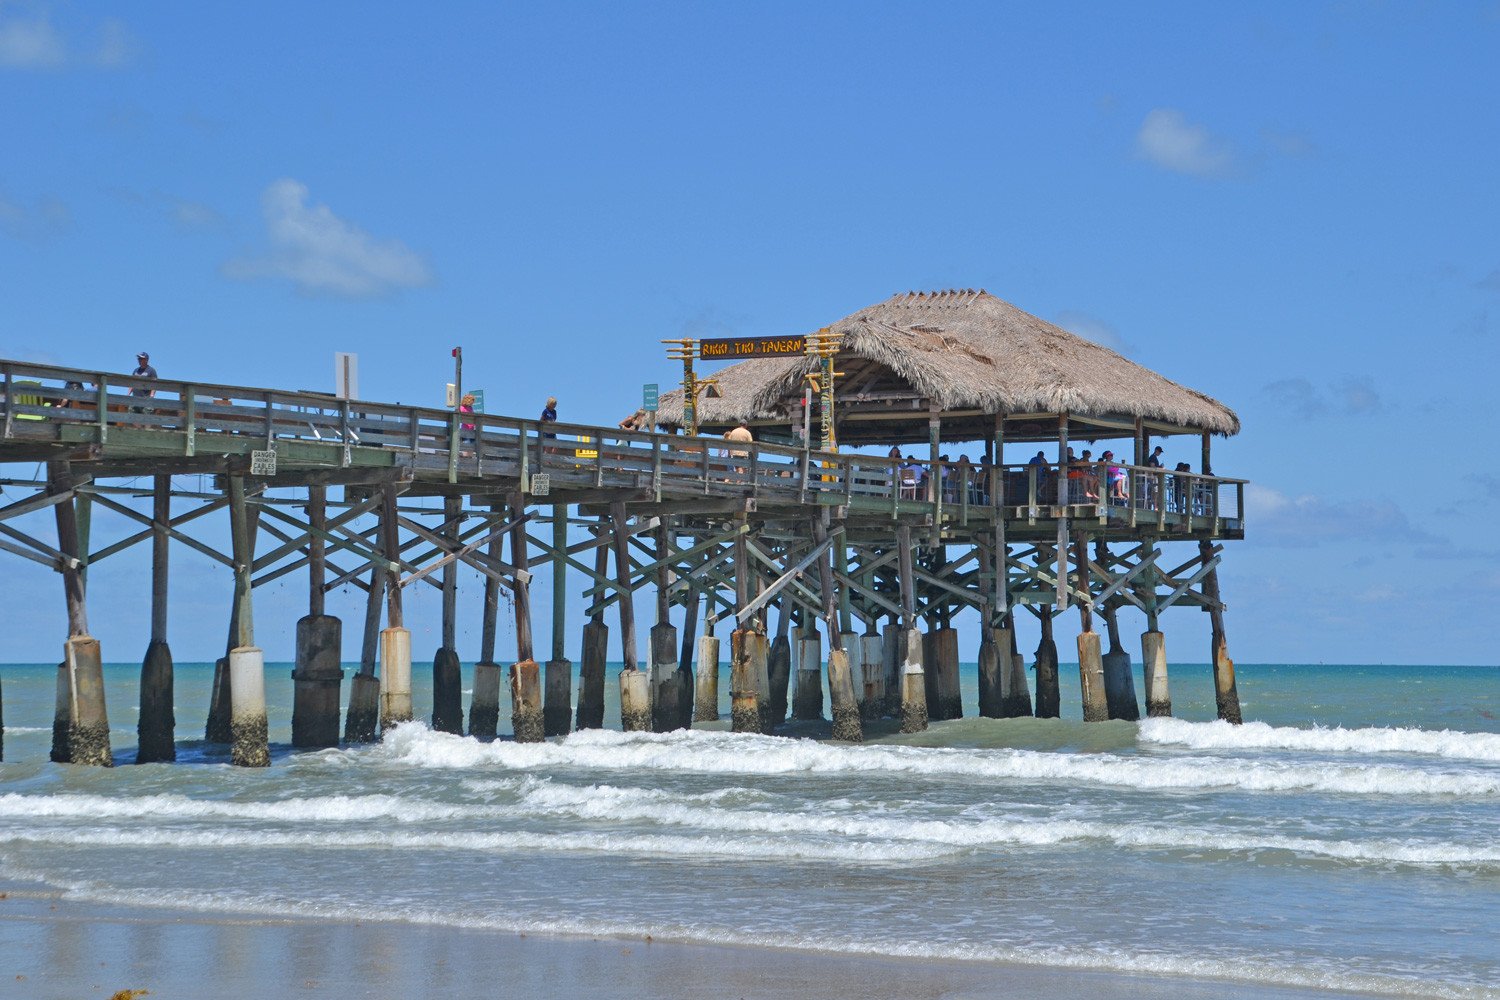 The pier at Cocoa Beach, Florida